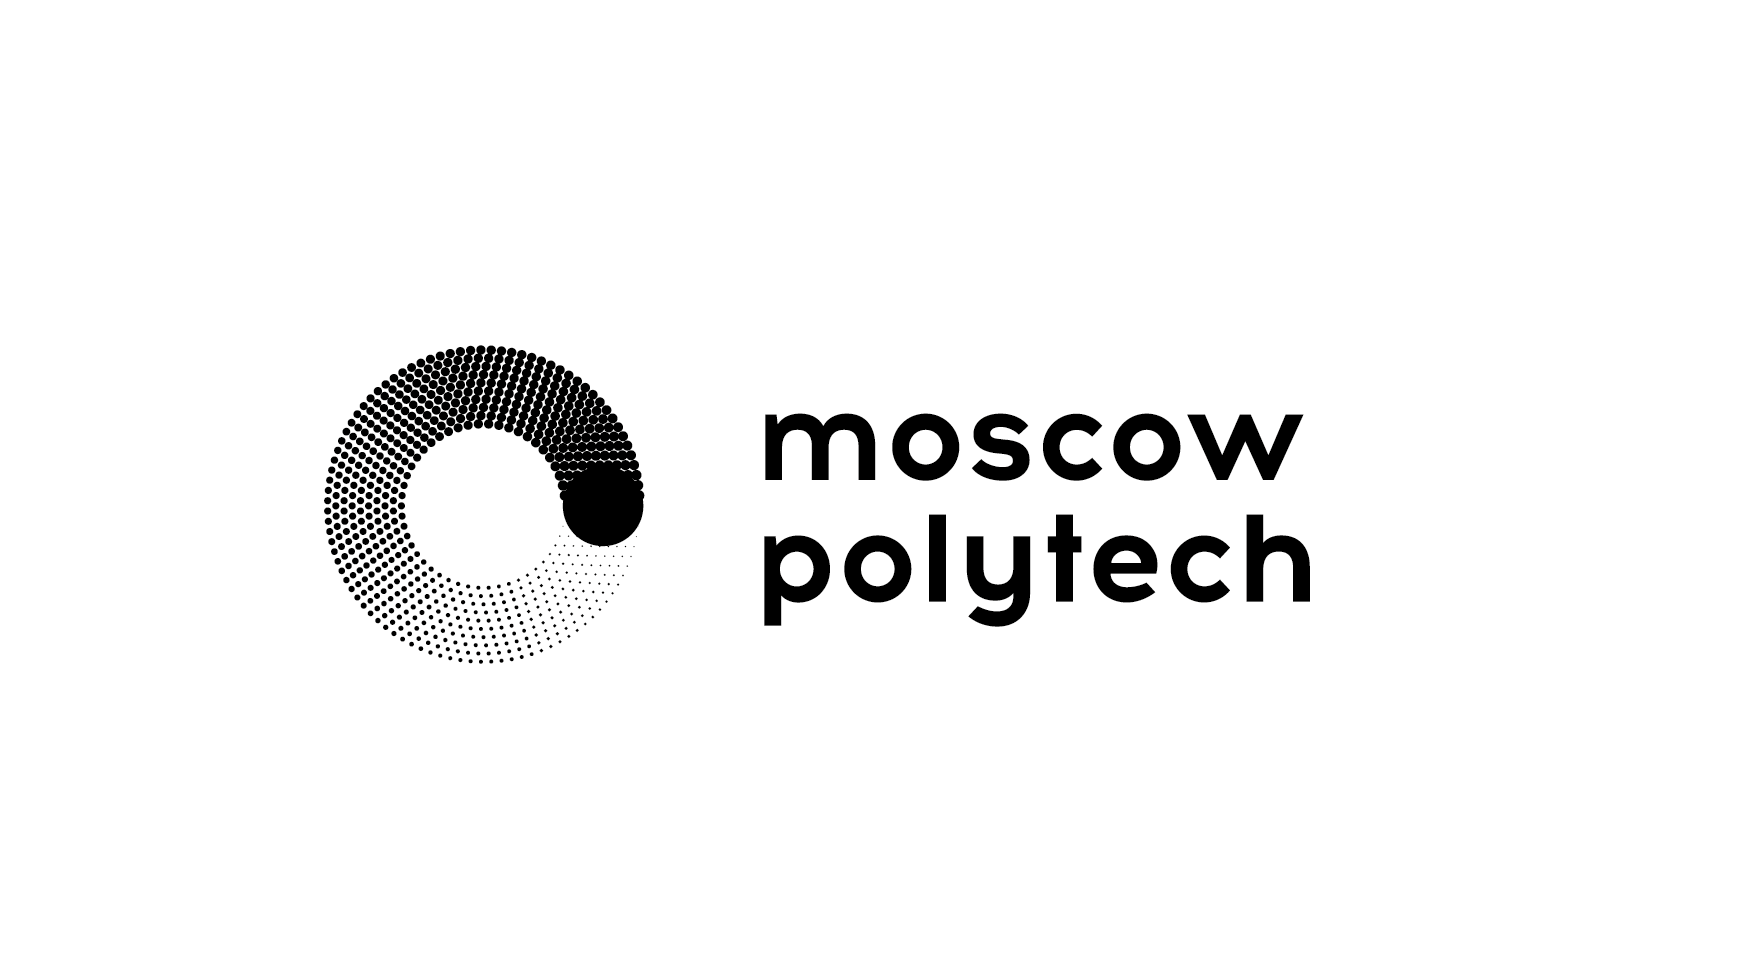 École polytechnique de Moscou